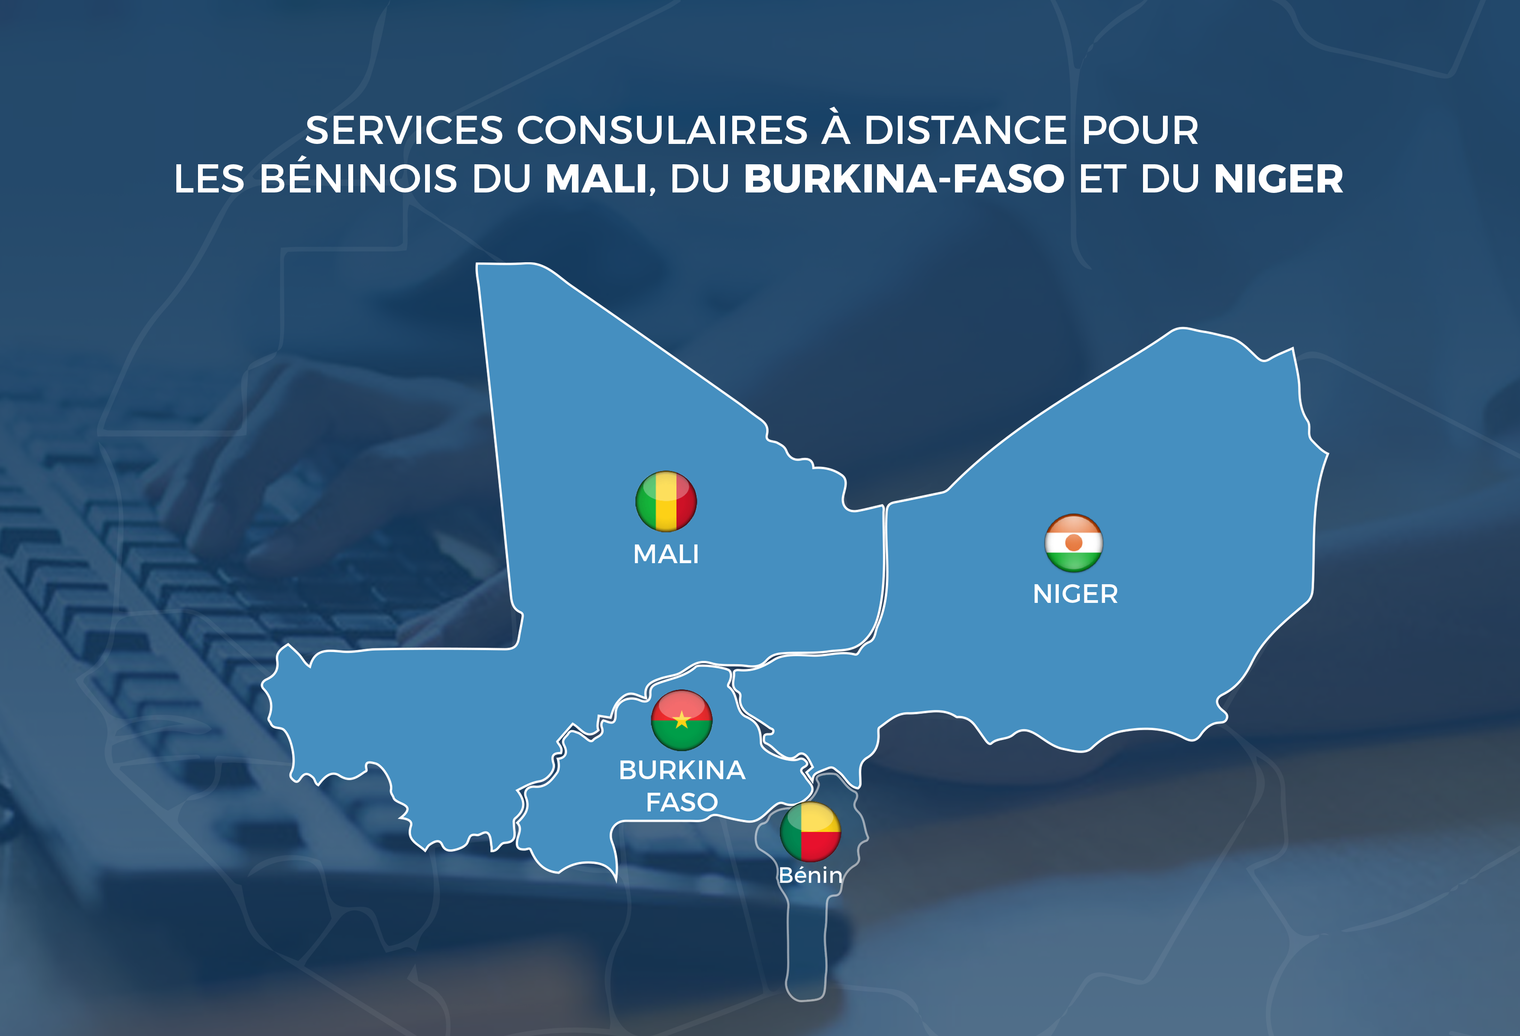 Services consulaires à distance pour les Béninois du Mali, du Burkina-Faso et du Niger